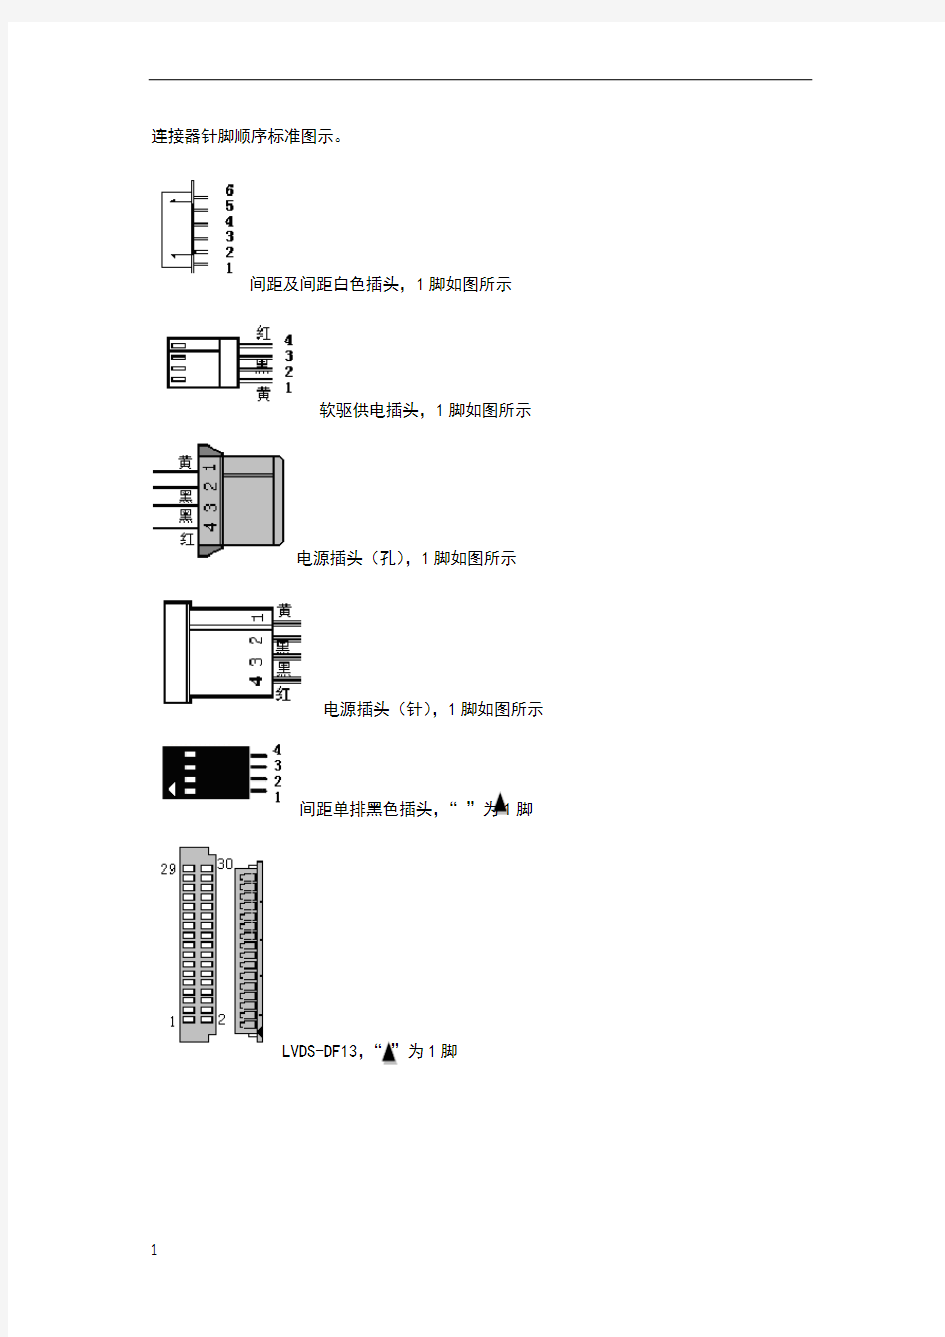 连接器针脚顺序标准图示